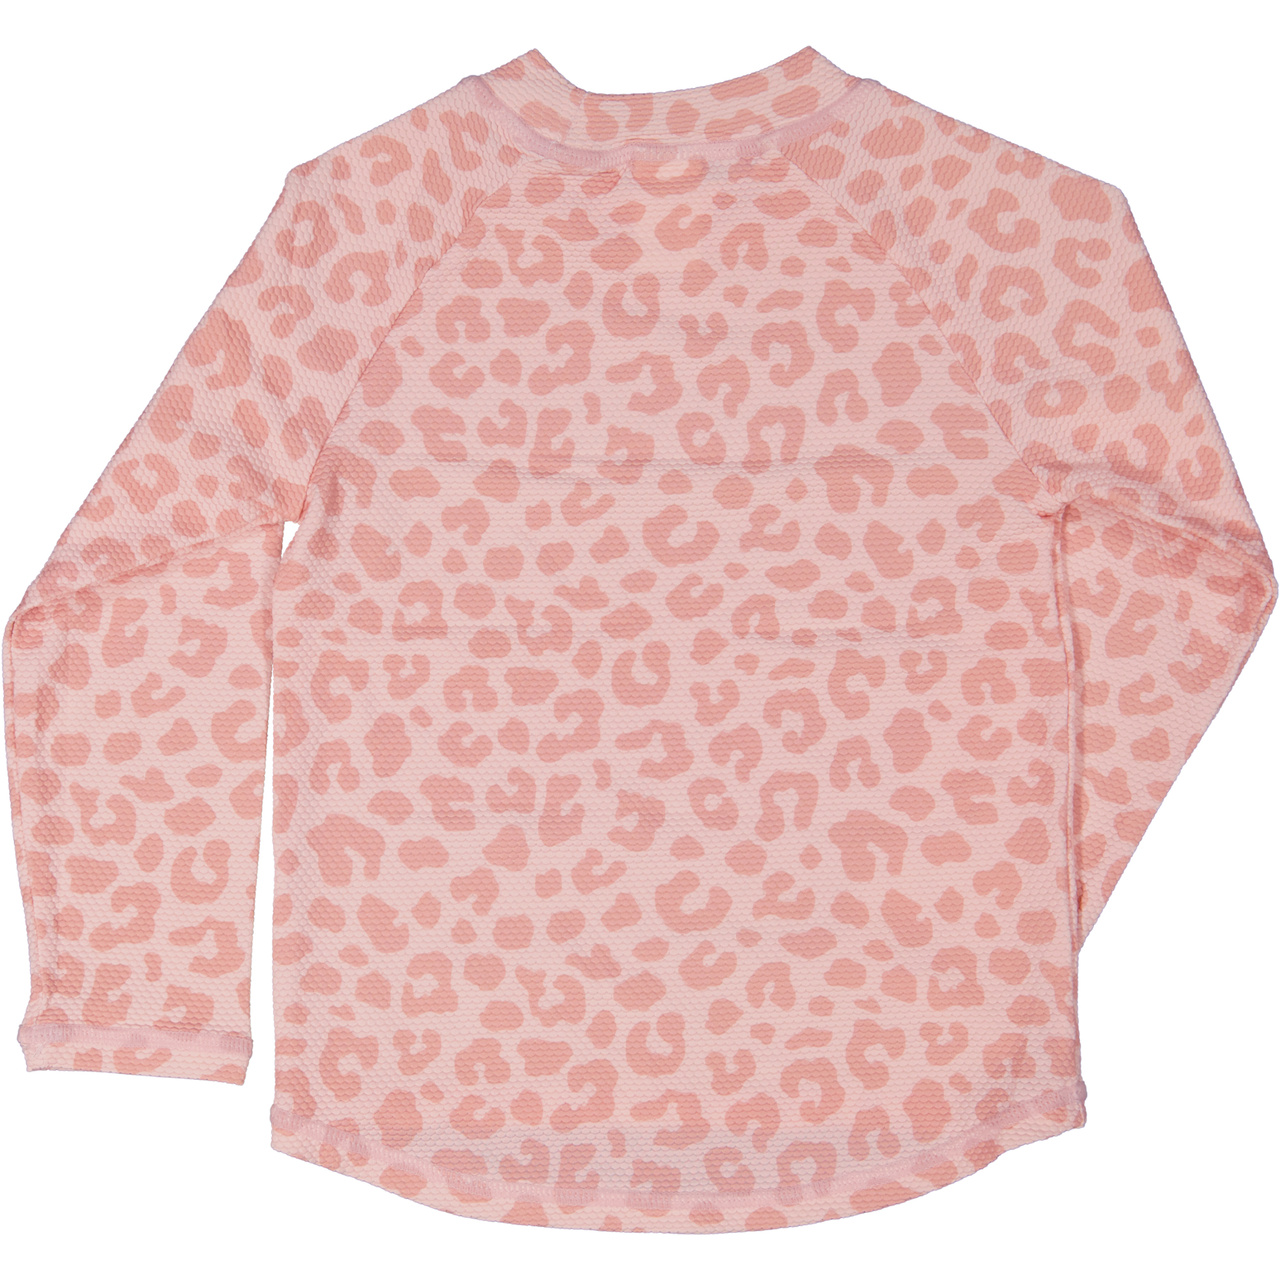 UV-L.S sweater Pink Leo  98/104